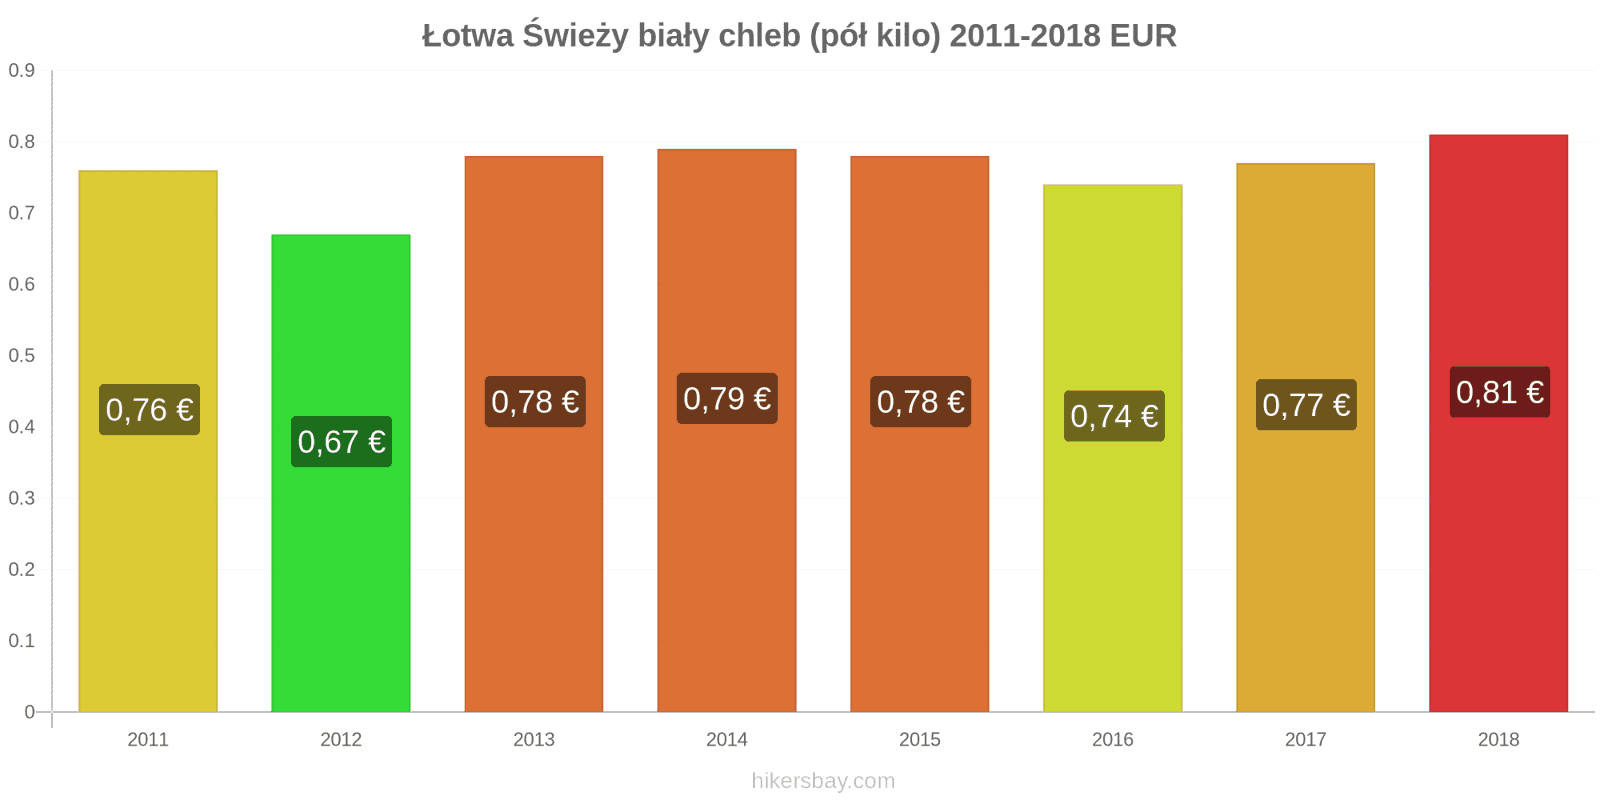 Łotwa zmiany cen Chleb pół kilo hikersbay.com